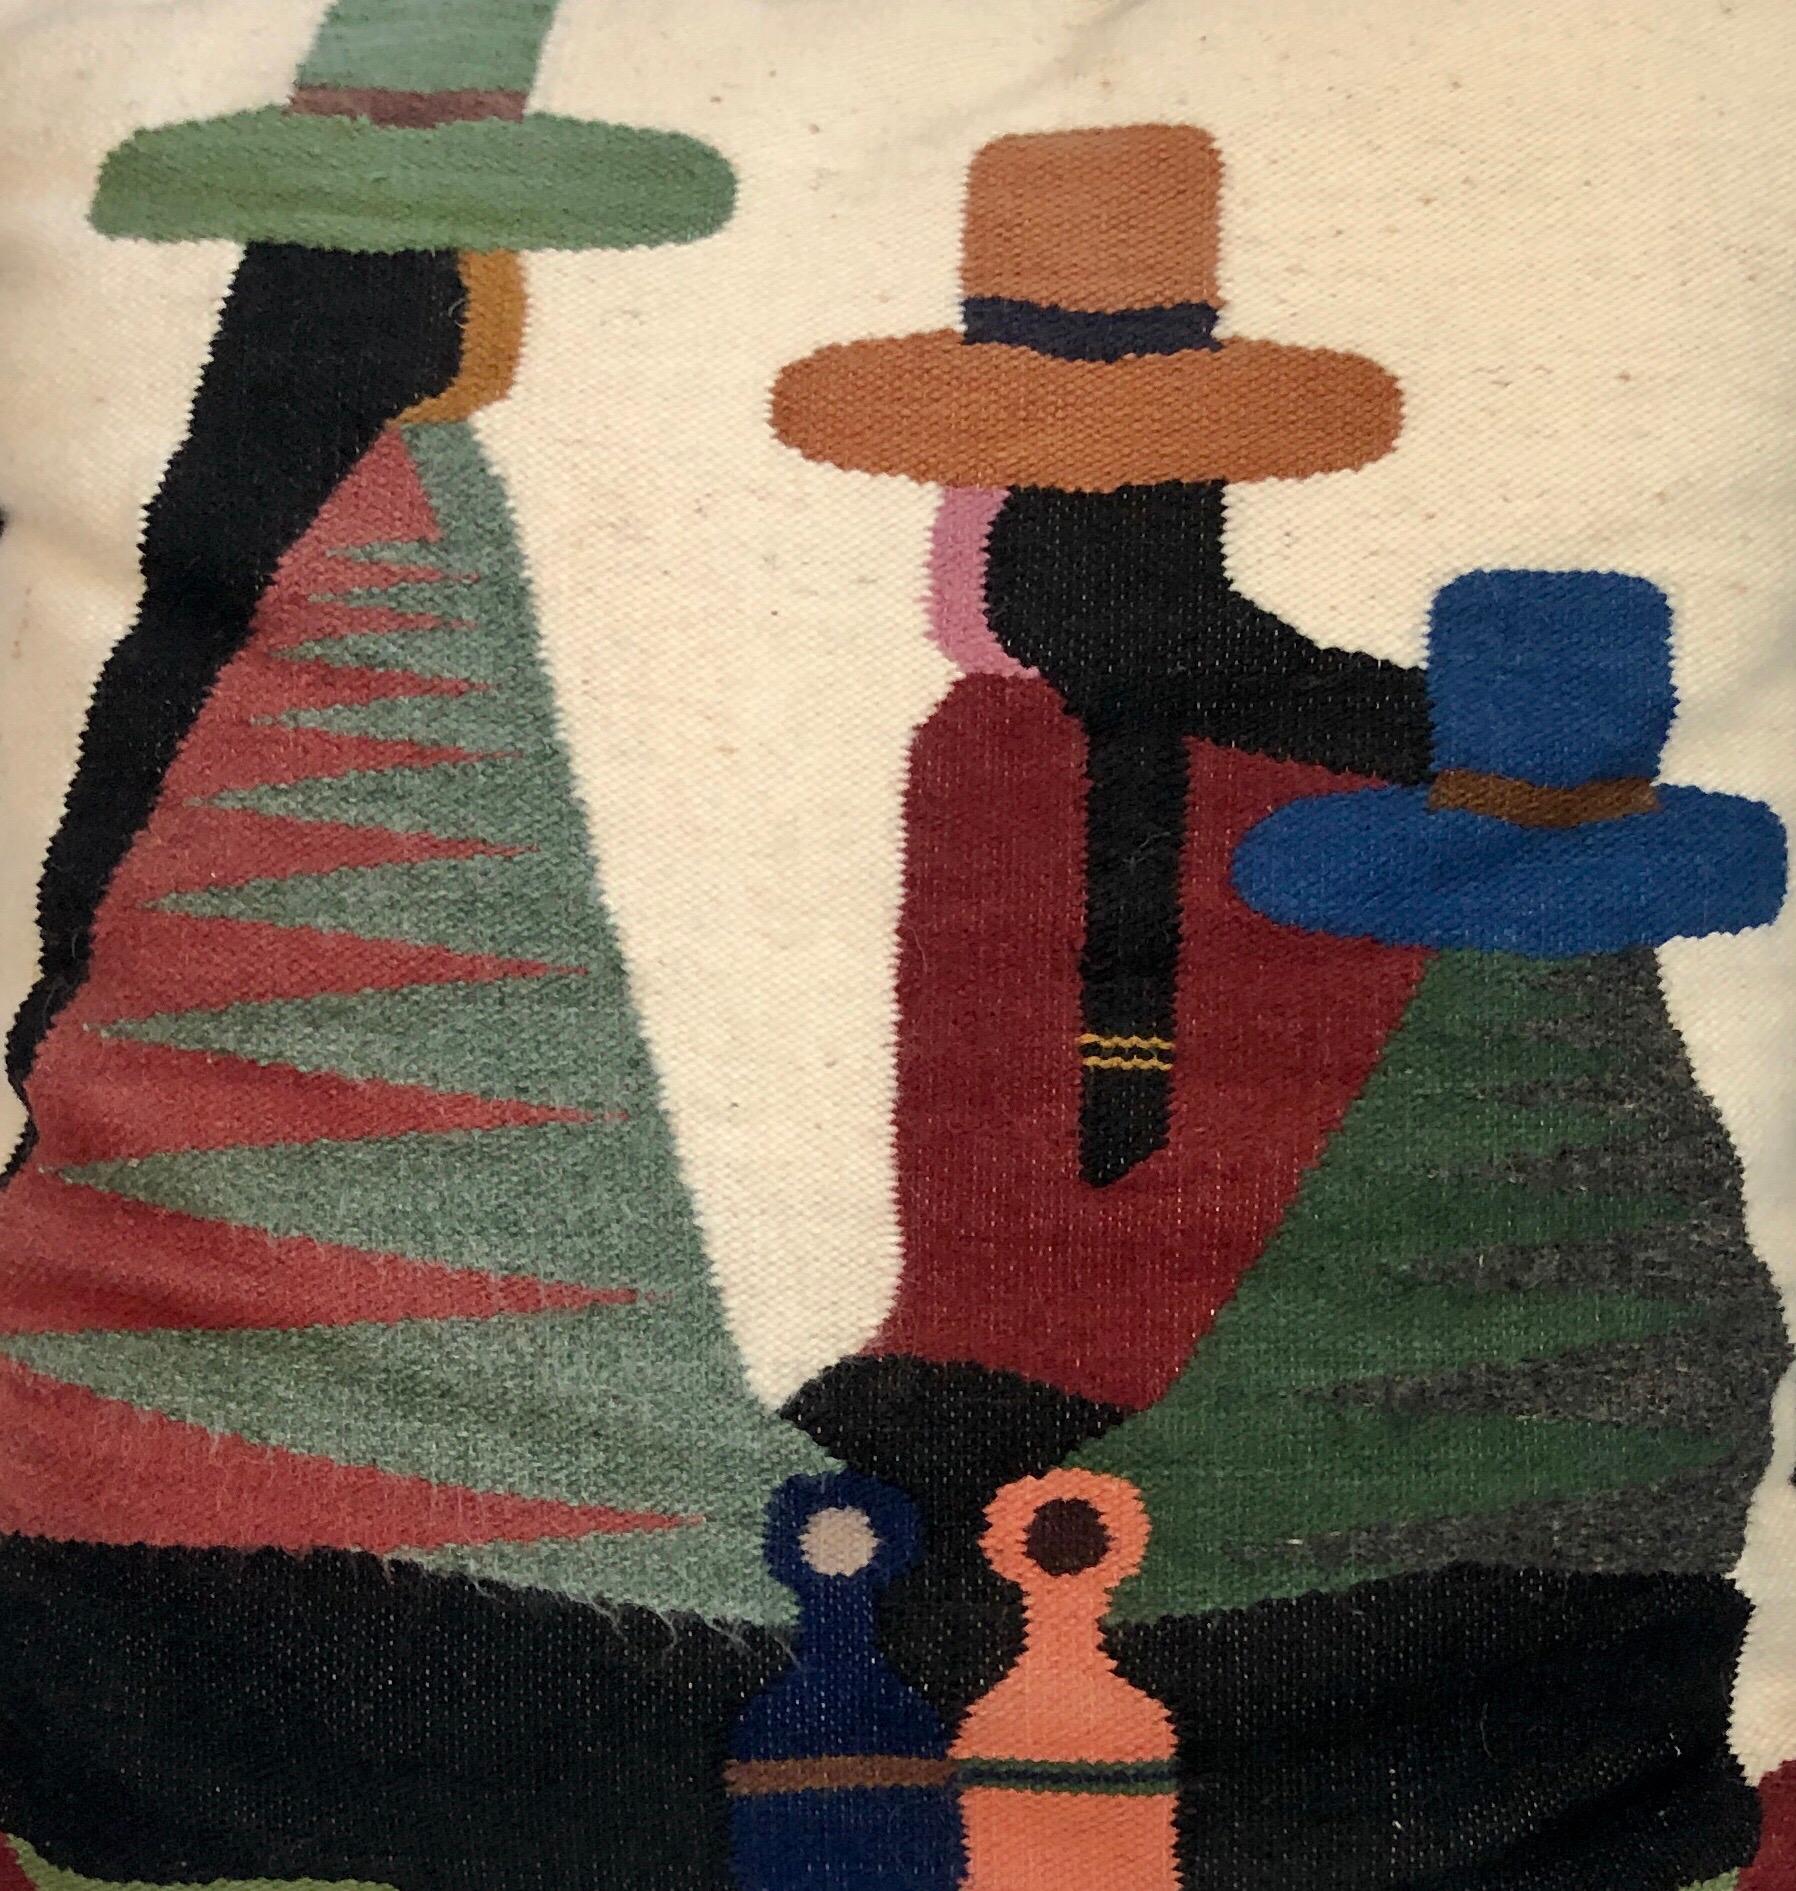 Vintage Handwoven Tapestry Wool Folk Art Rug Weaving Pillow or Wall Hanging (Tapisserie en laine tissée à la main, tissage de tapis, oreiller ou suspension murale) 